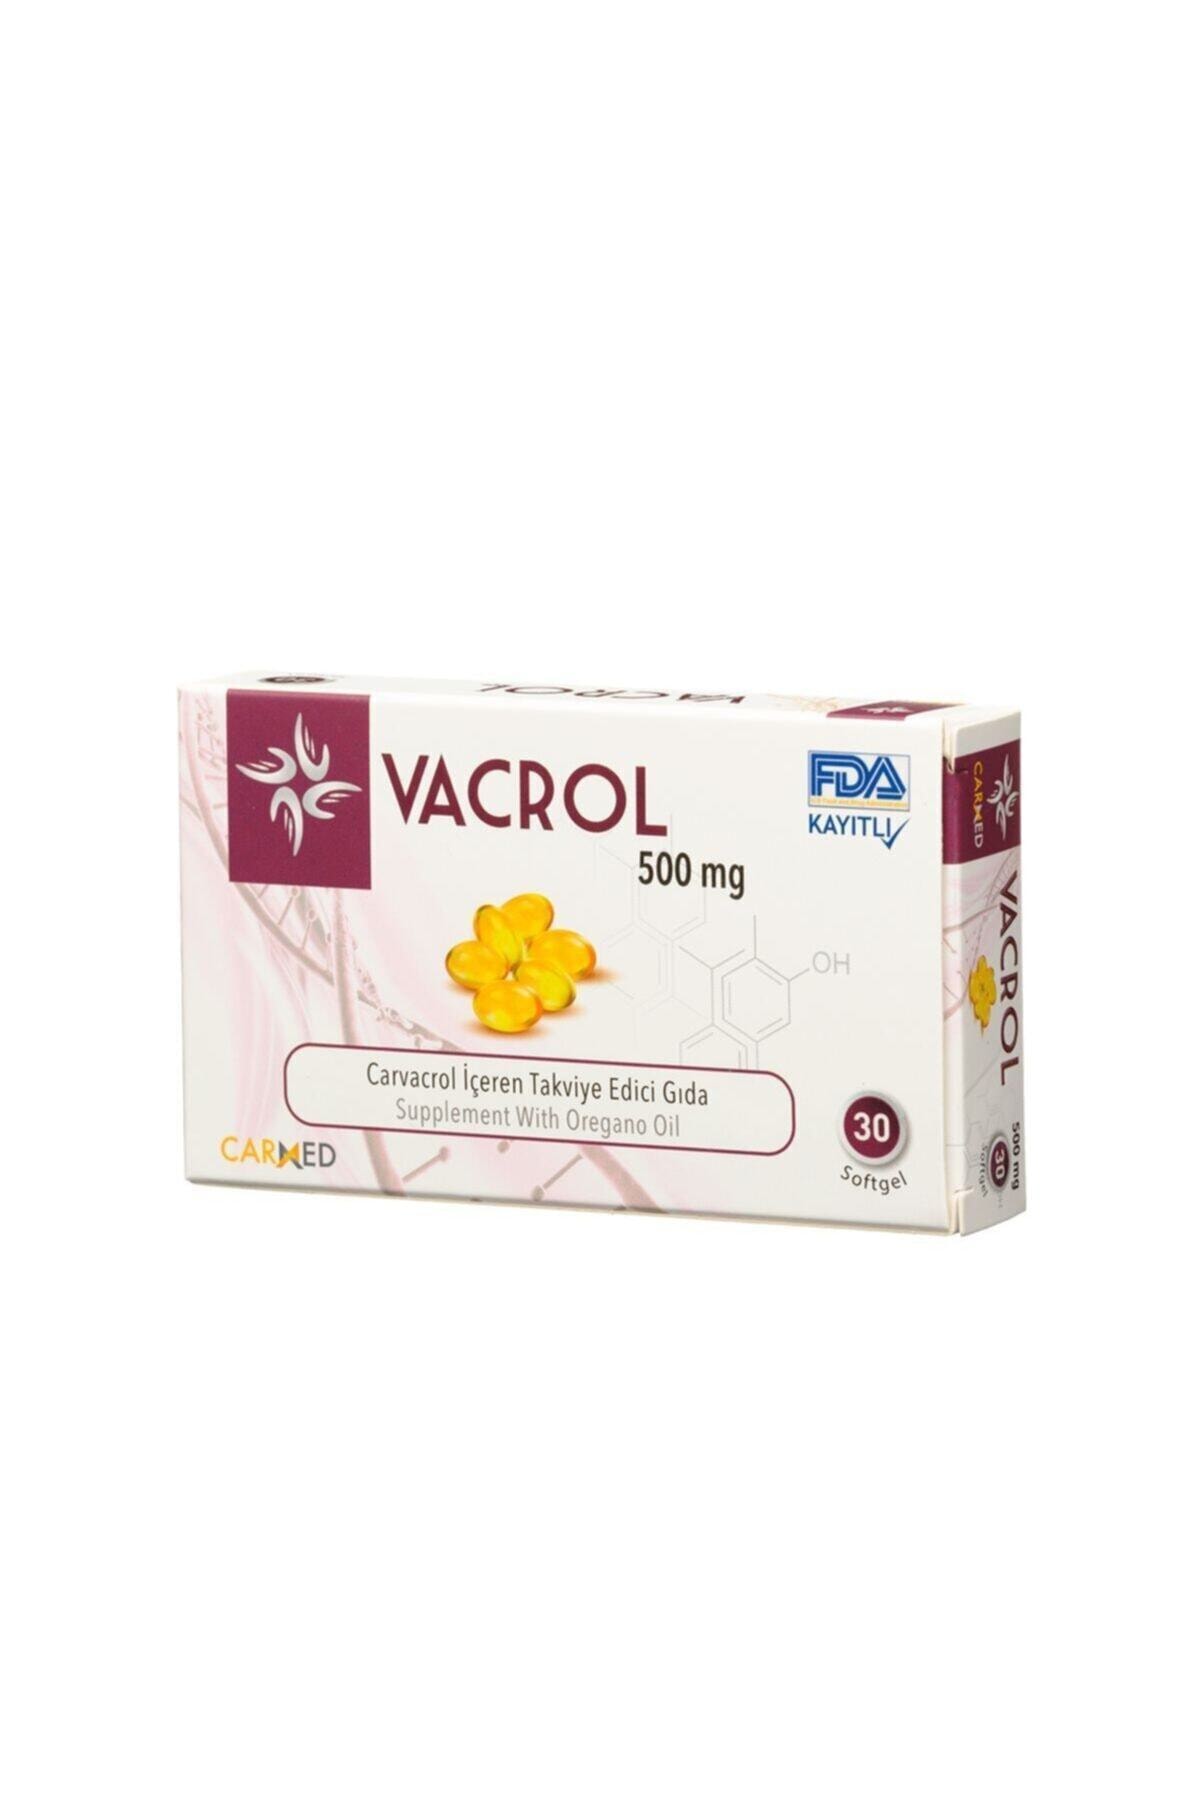 Vacrol 500mg 30 Softgel - Karvakrol Içeren Takviye Edici Gıda